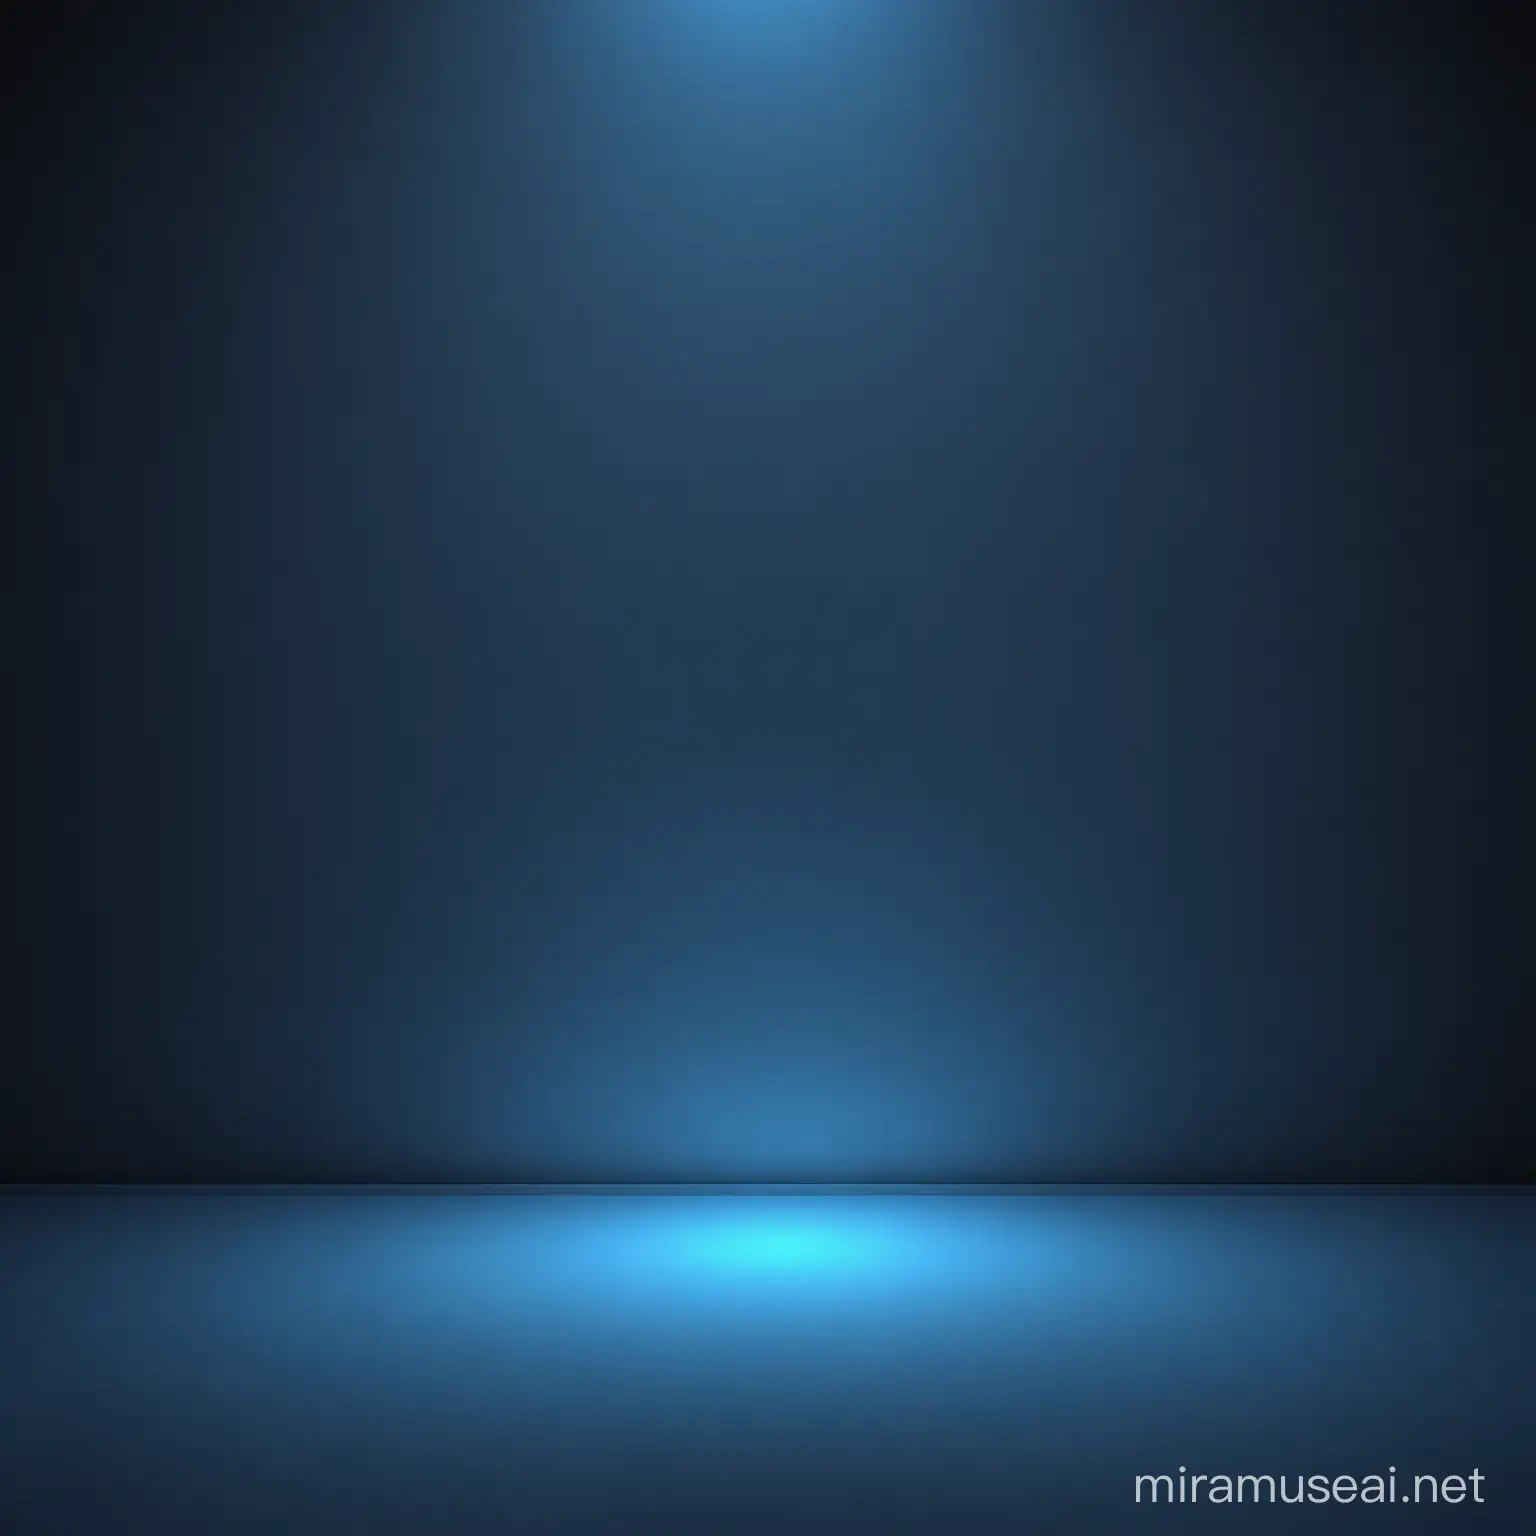 illuminated blue background